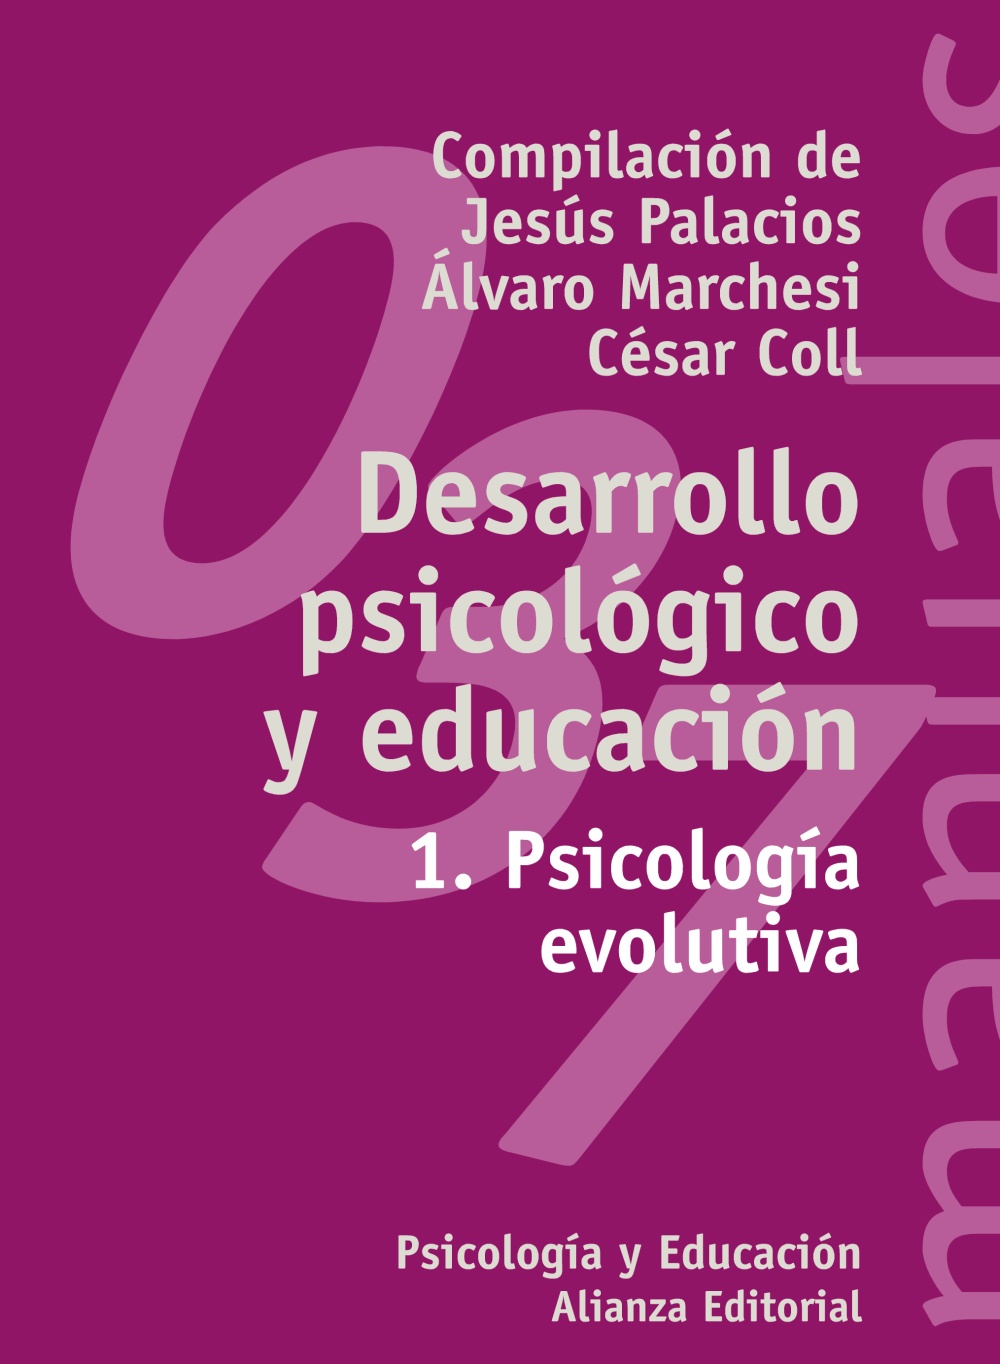 Desarrollo psicológico y educación 1. Psicología evolutiva